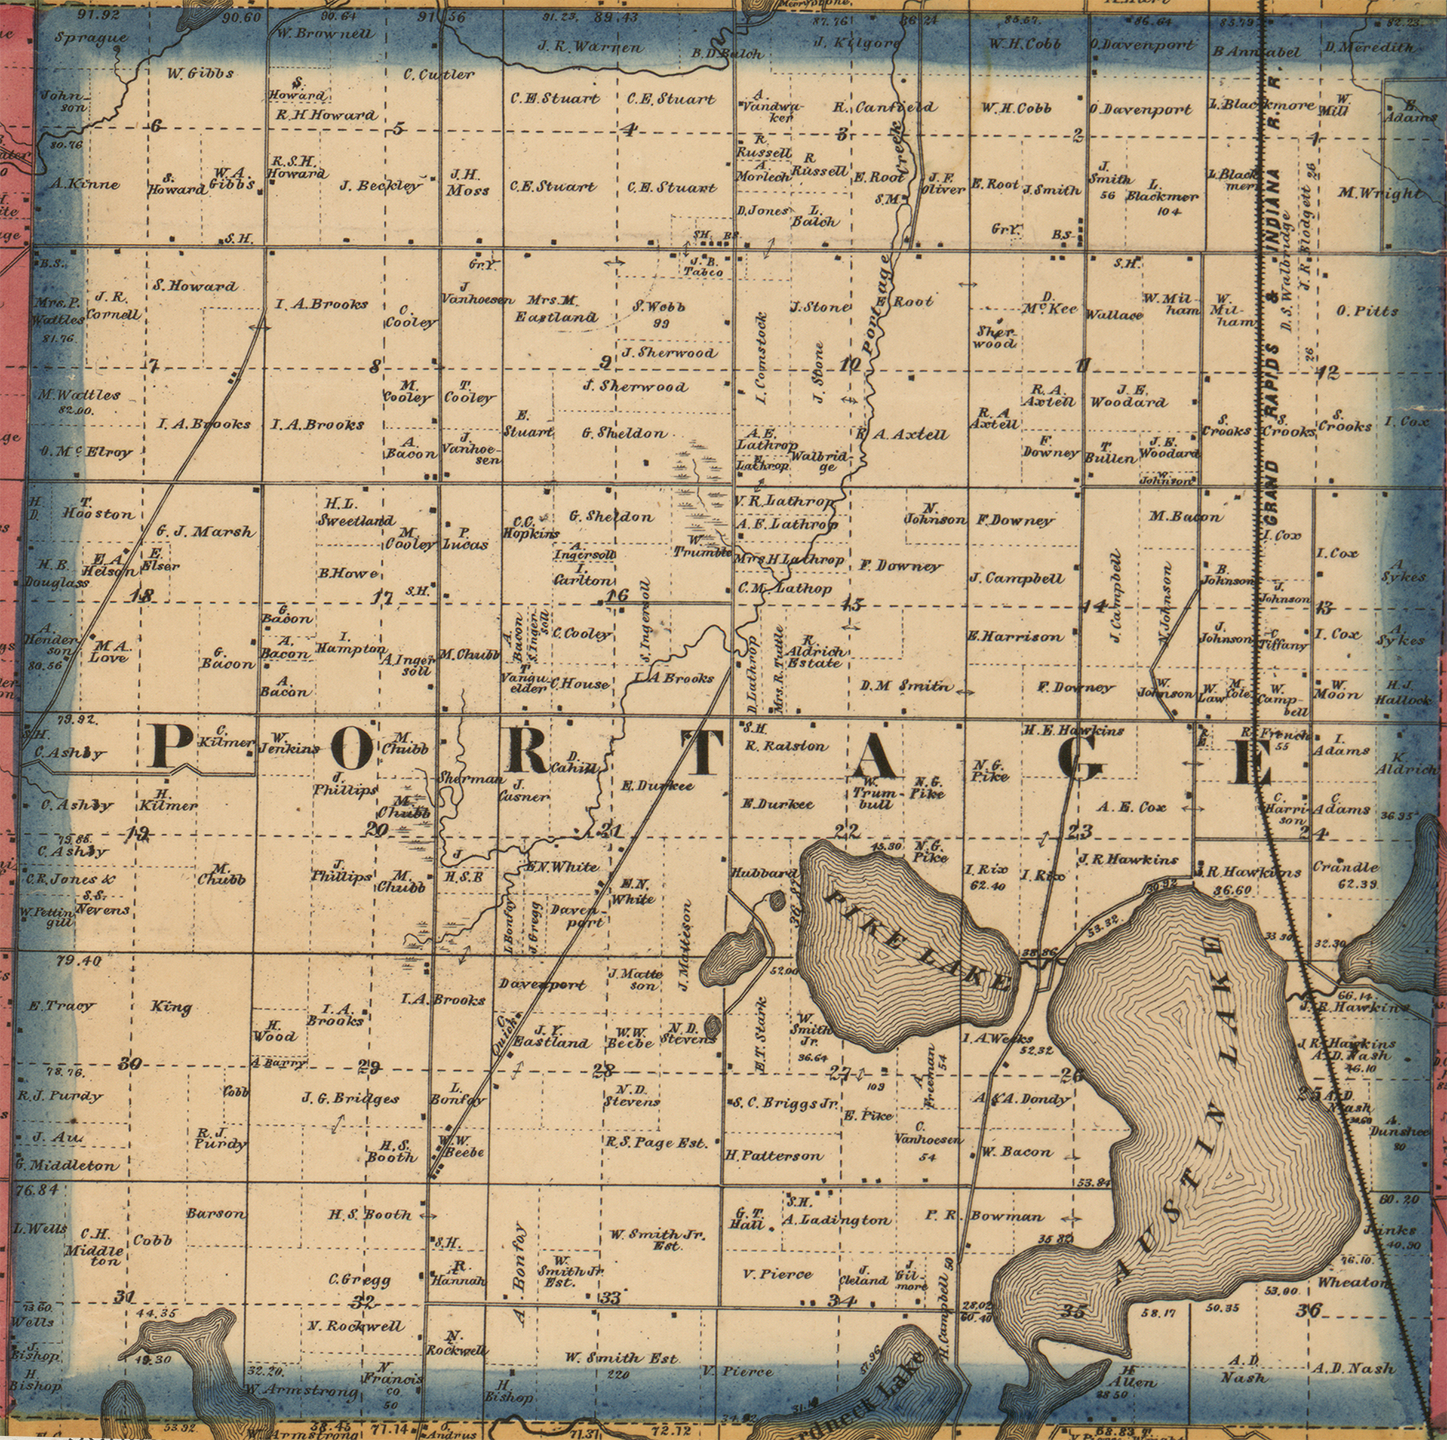 1861 Portage Township Michigan landownership map